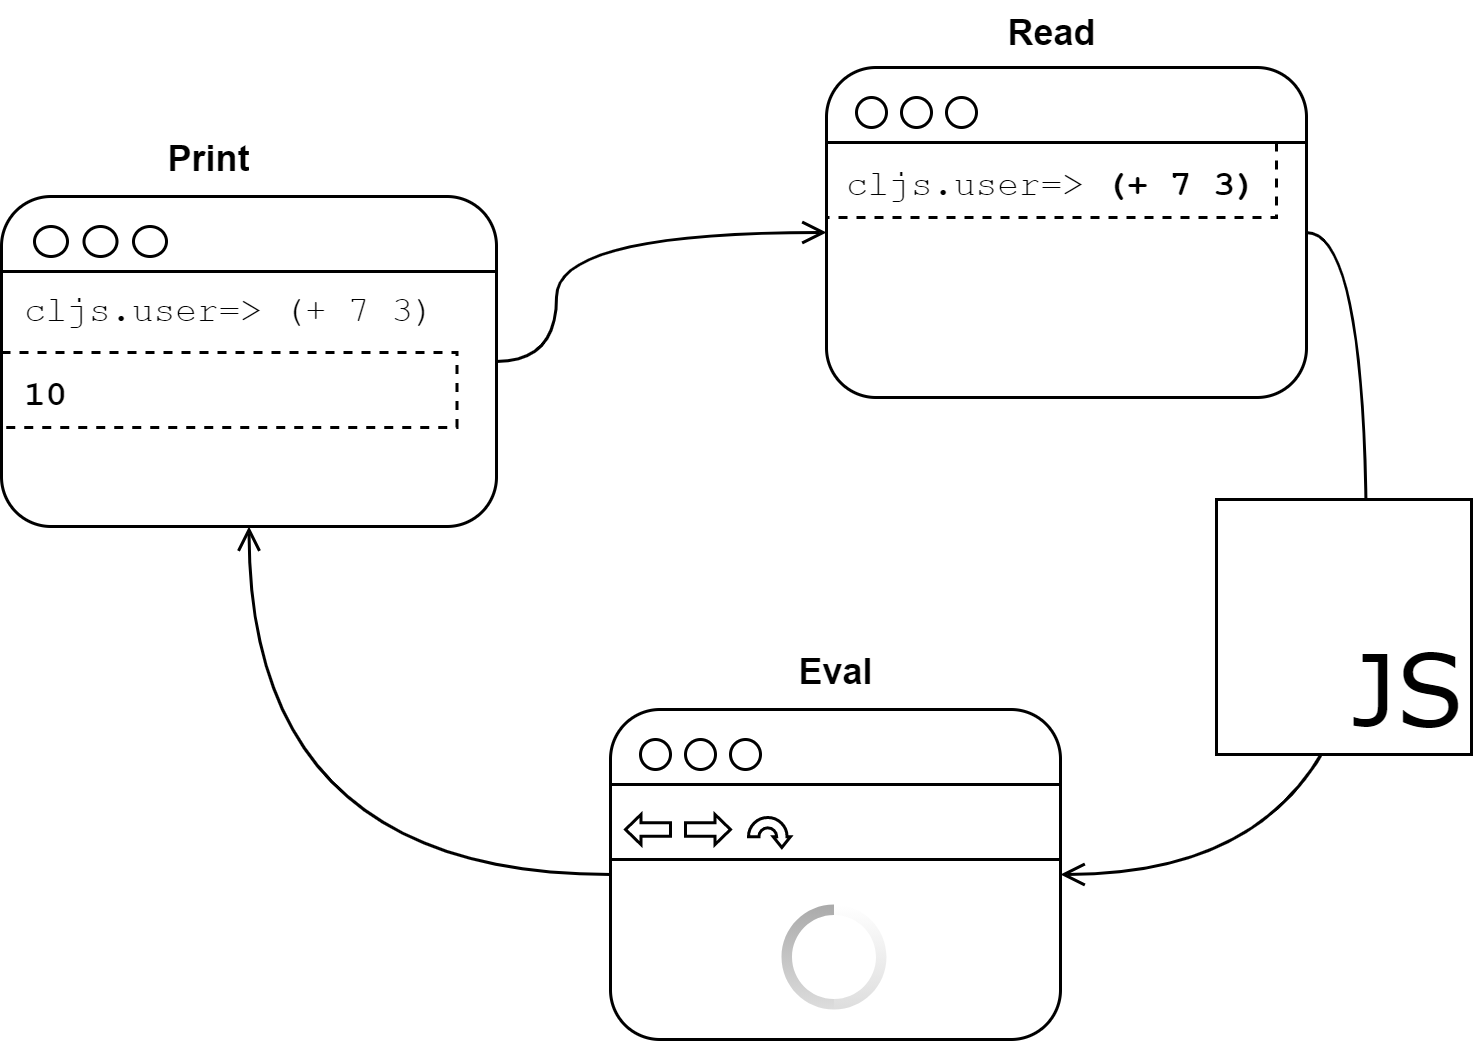 The Read-Eval-Print Loop